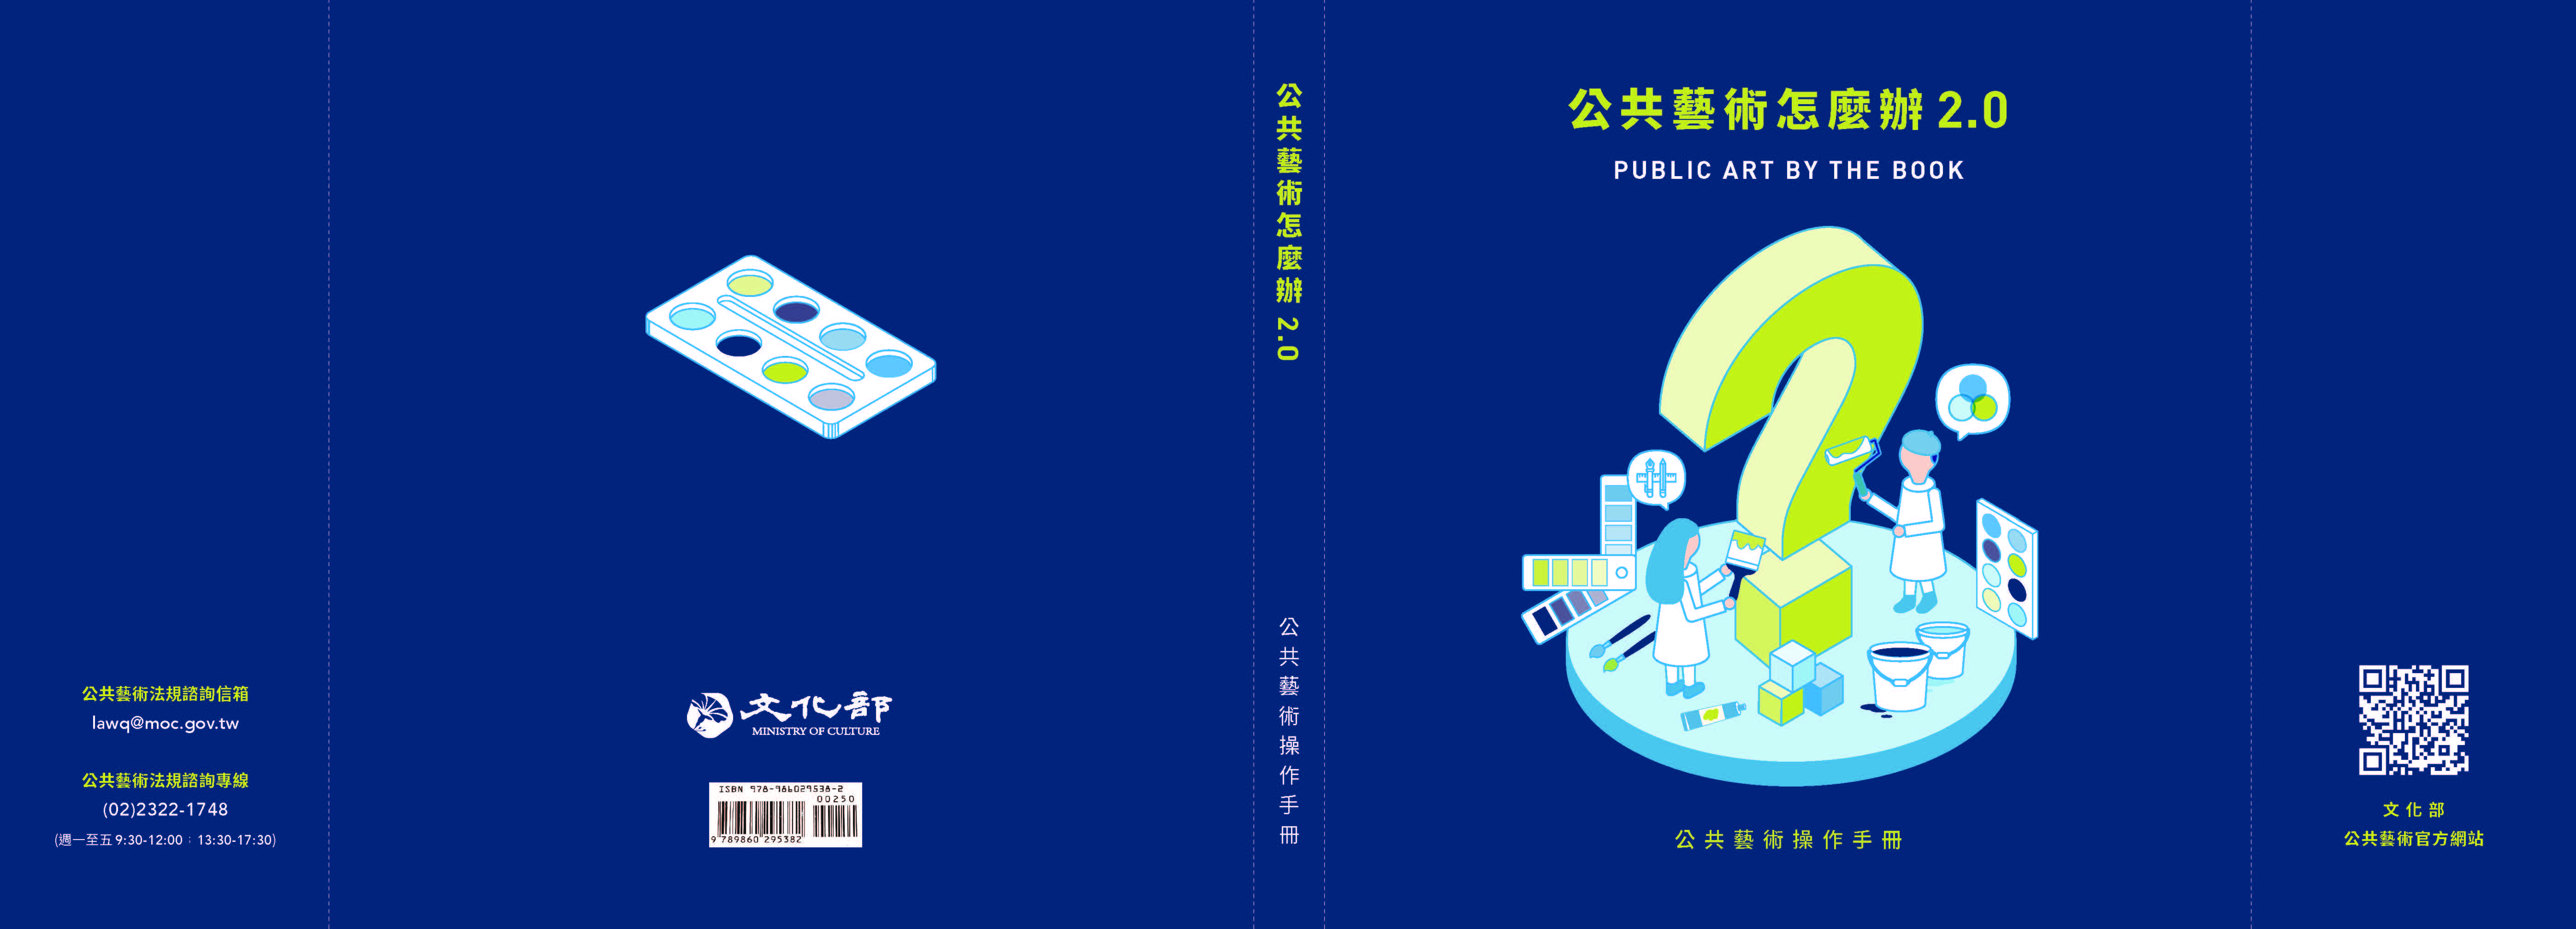 公共藝術怎麼辦2.0 公共藝術操作手冊